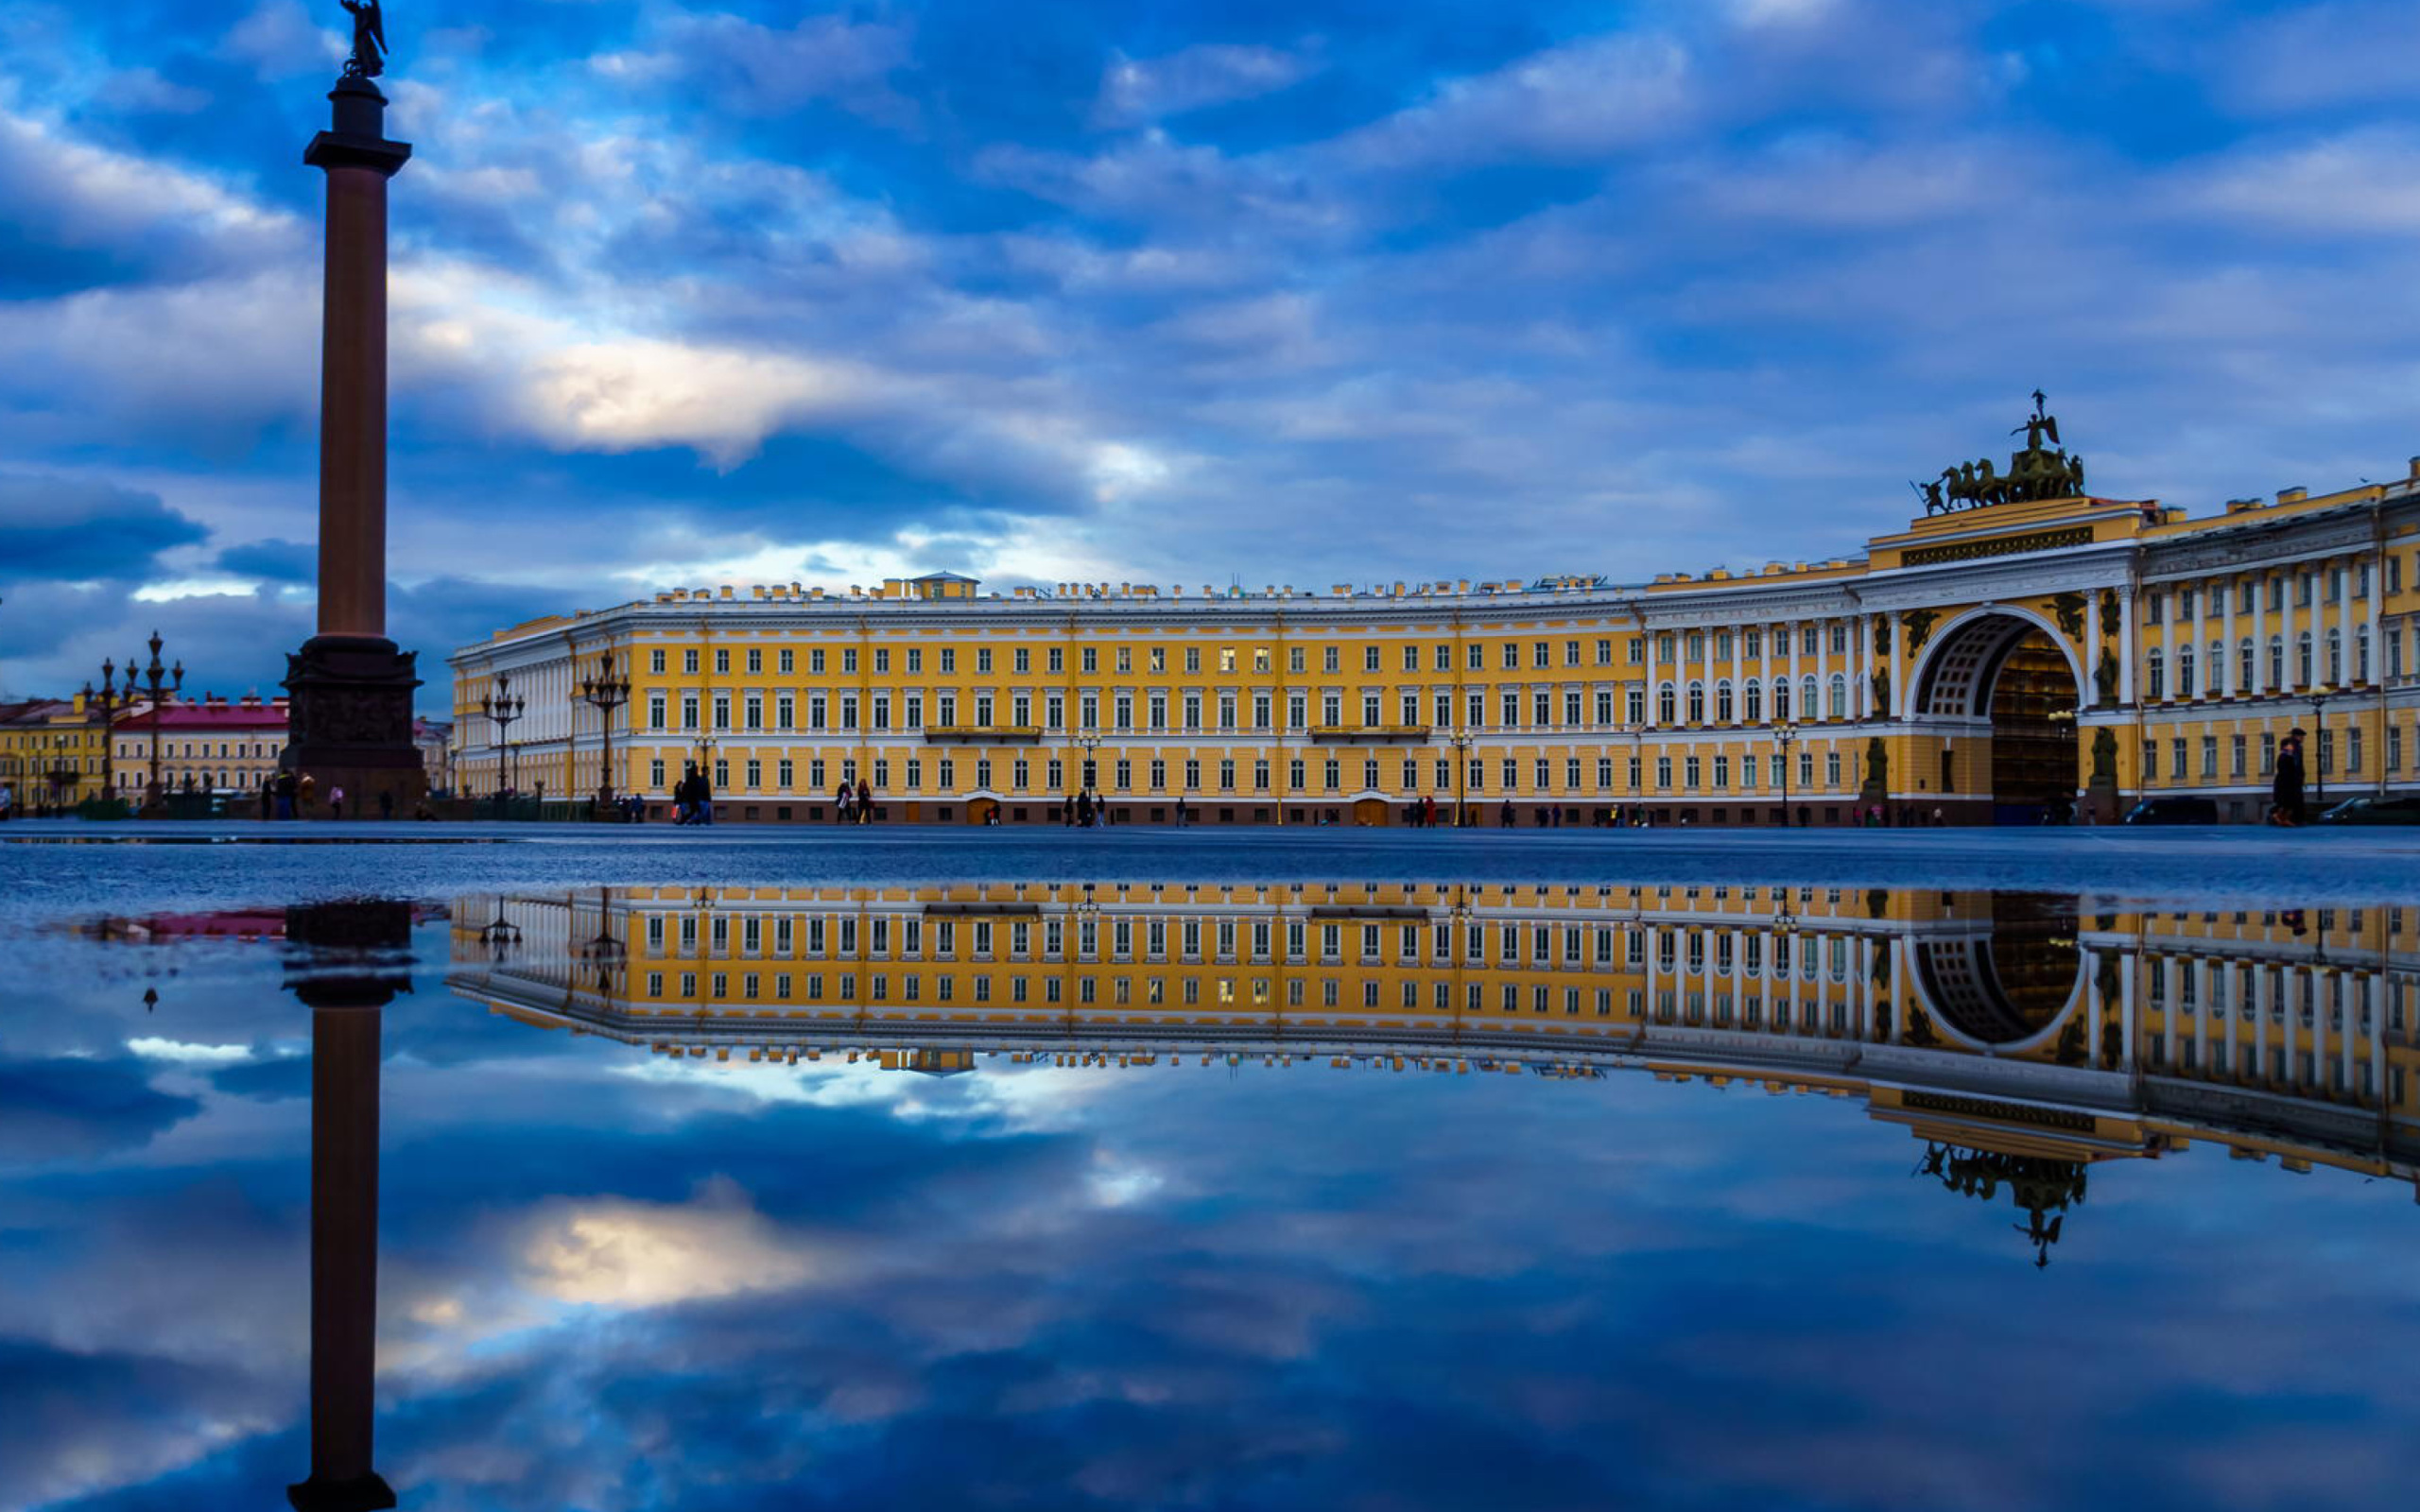 Saint Petersburg, Winter Palace, Alexander Column wallpaper 2560x1600